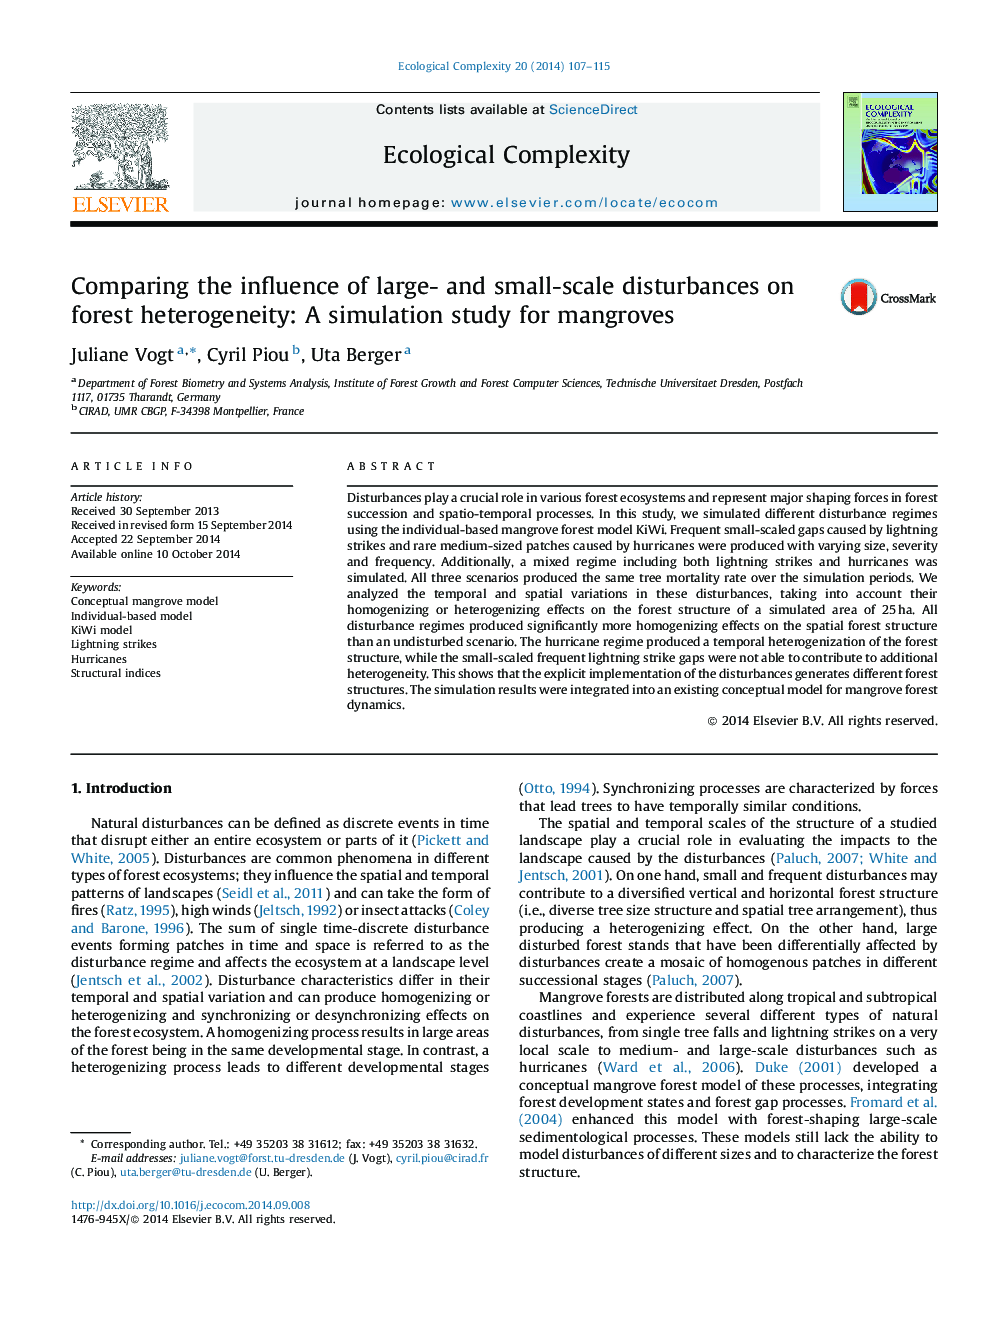 مقایسه تاثیر اختلالات بزرگ و کوچک بر ناهمگنی جنگل: مطالعه شبیه سازی برای مانگرو 